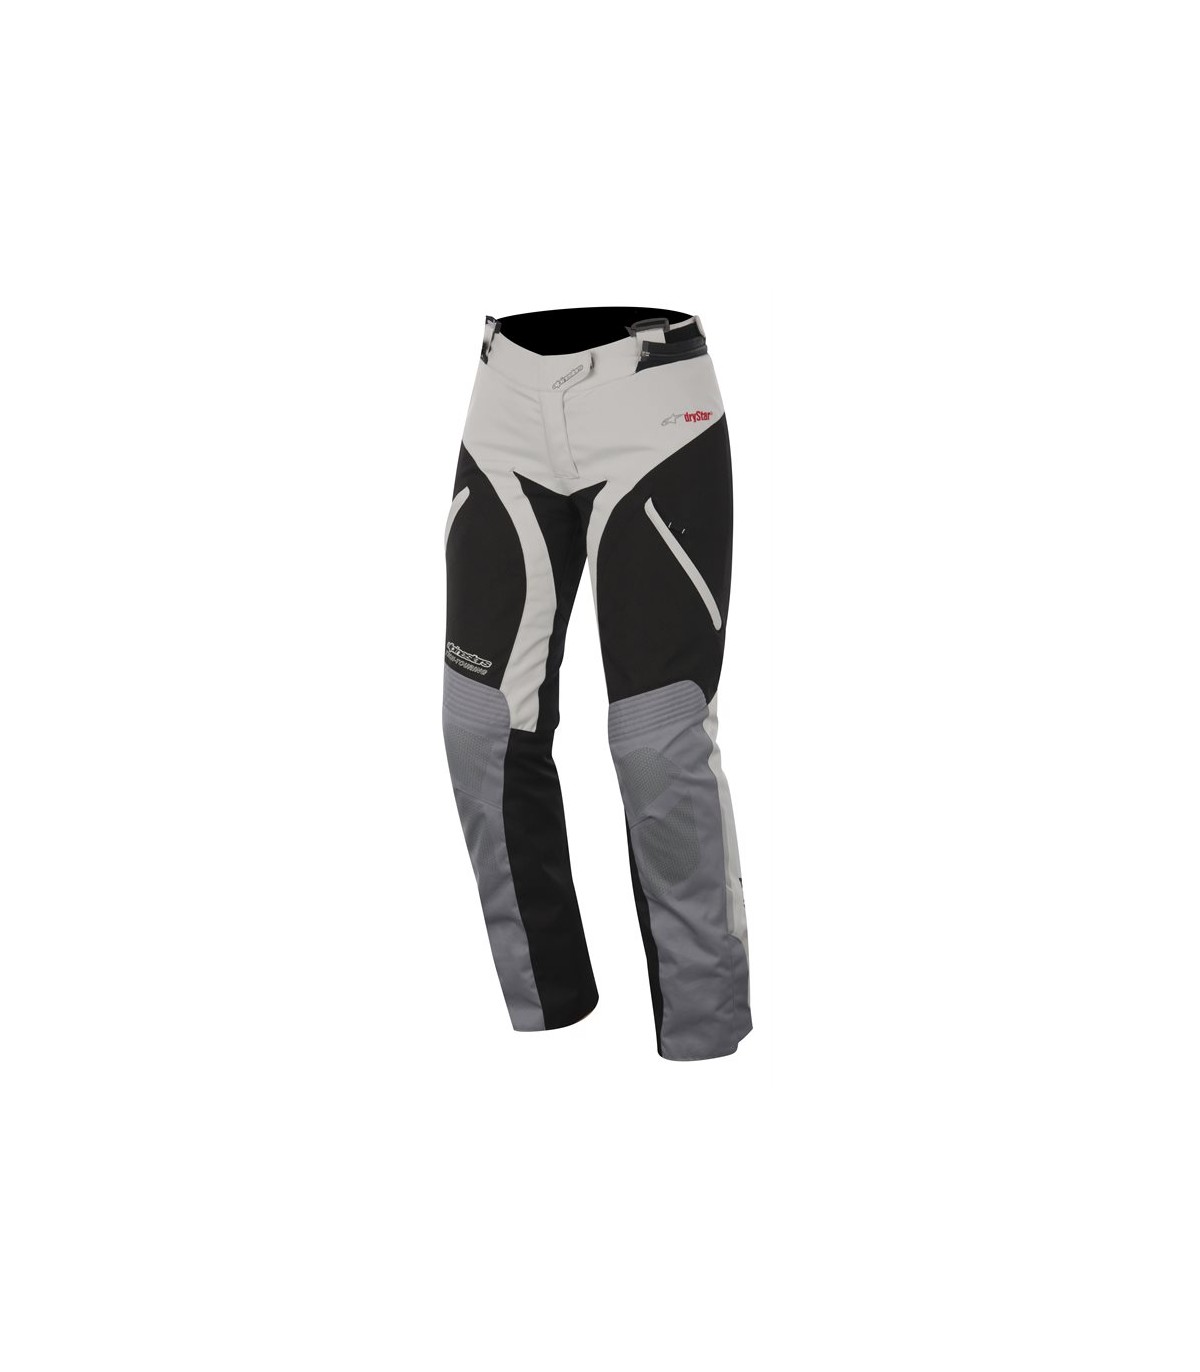 Pantalones Alpinestars Stella Drystar gris claro negro, comprar